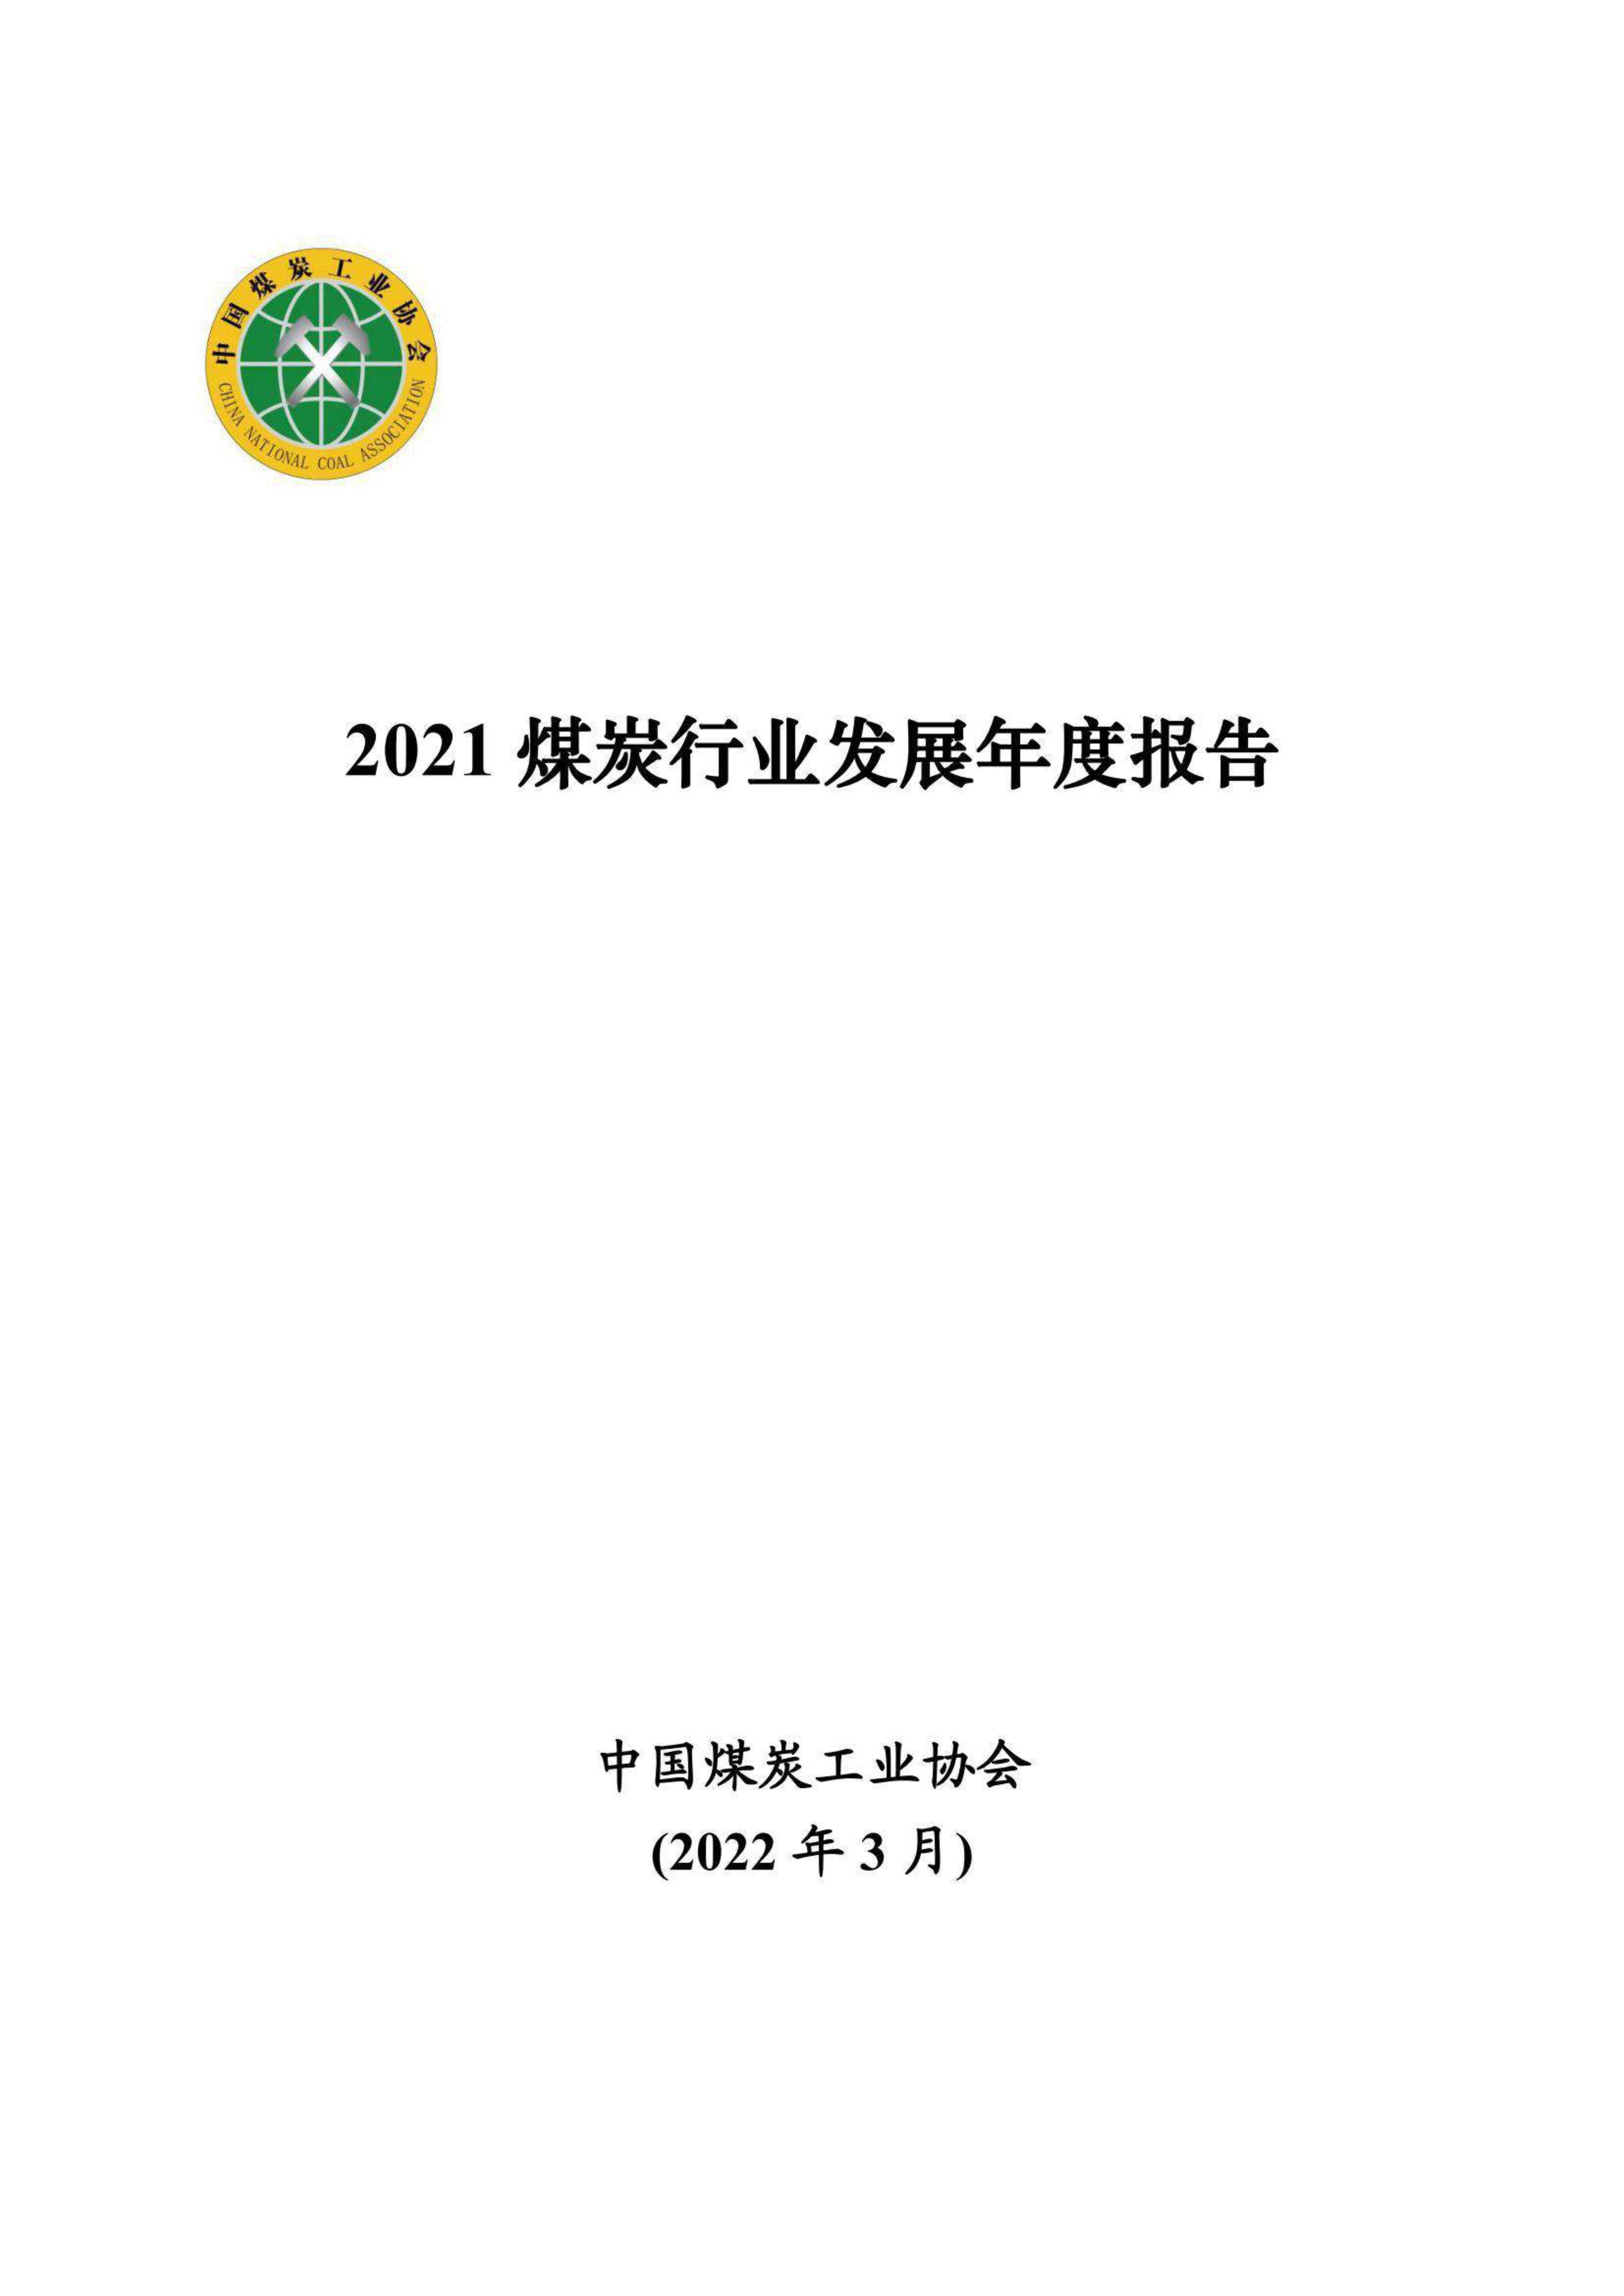 2021煤炭行业发展年度报告-2022.04-38页